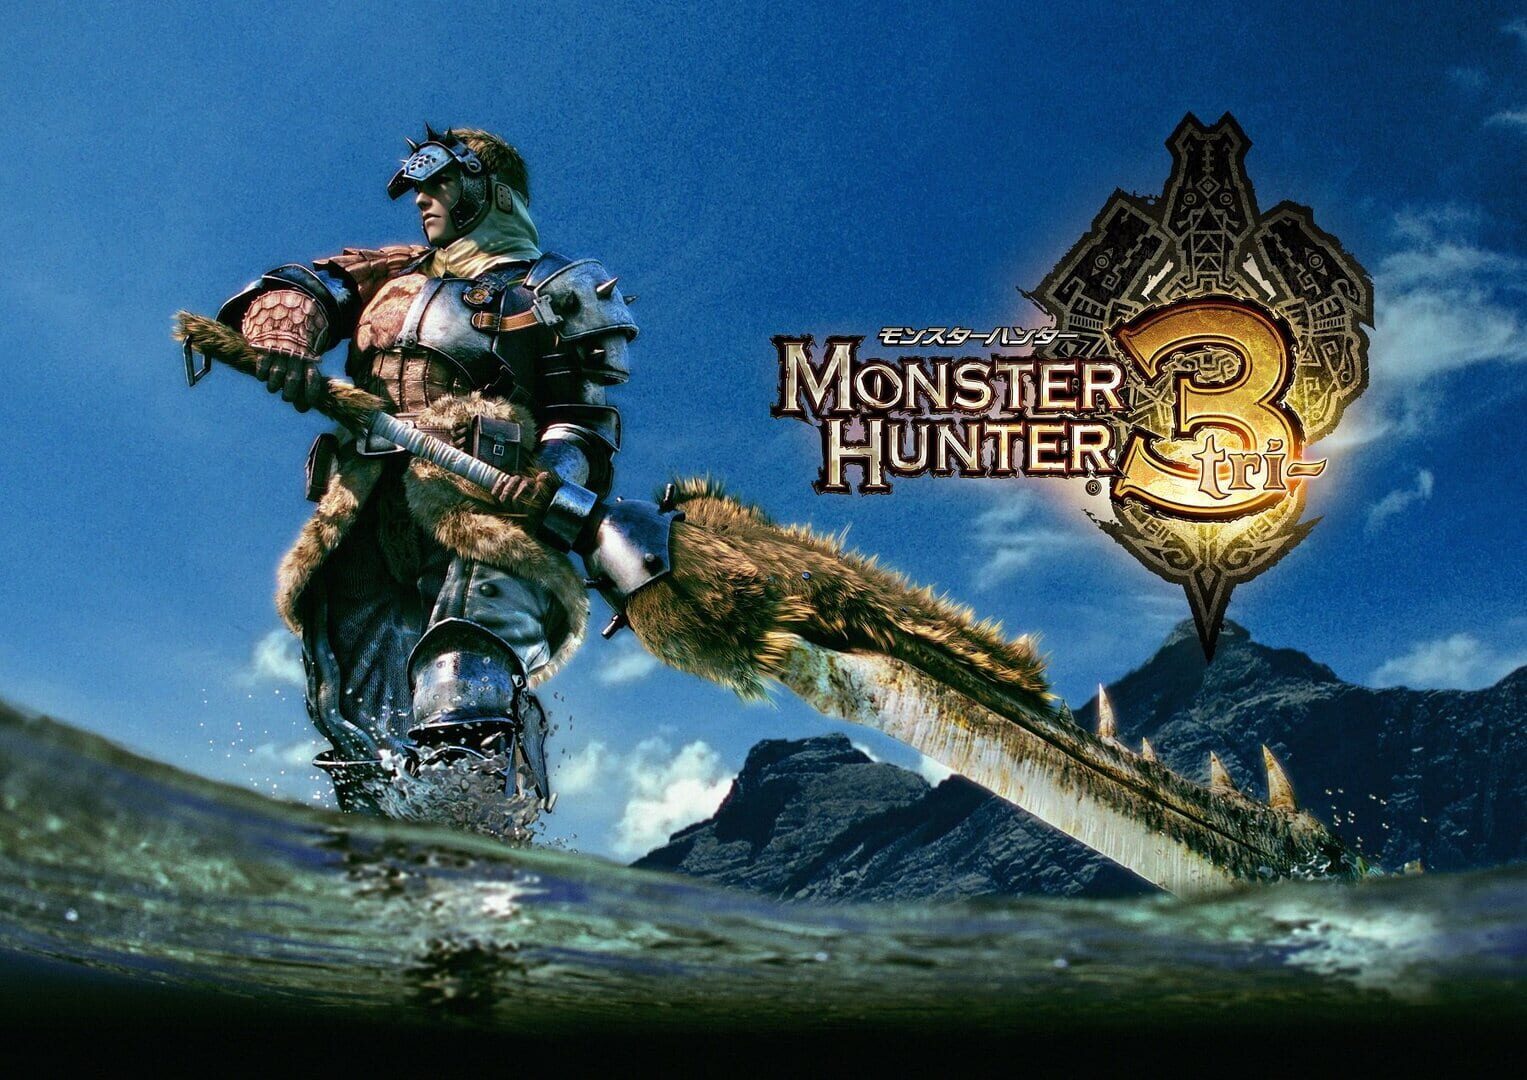 Arte - Monster Hunter Tri